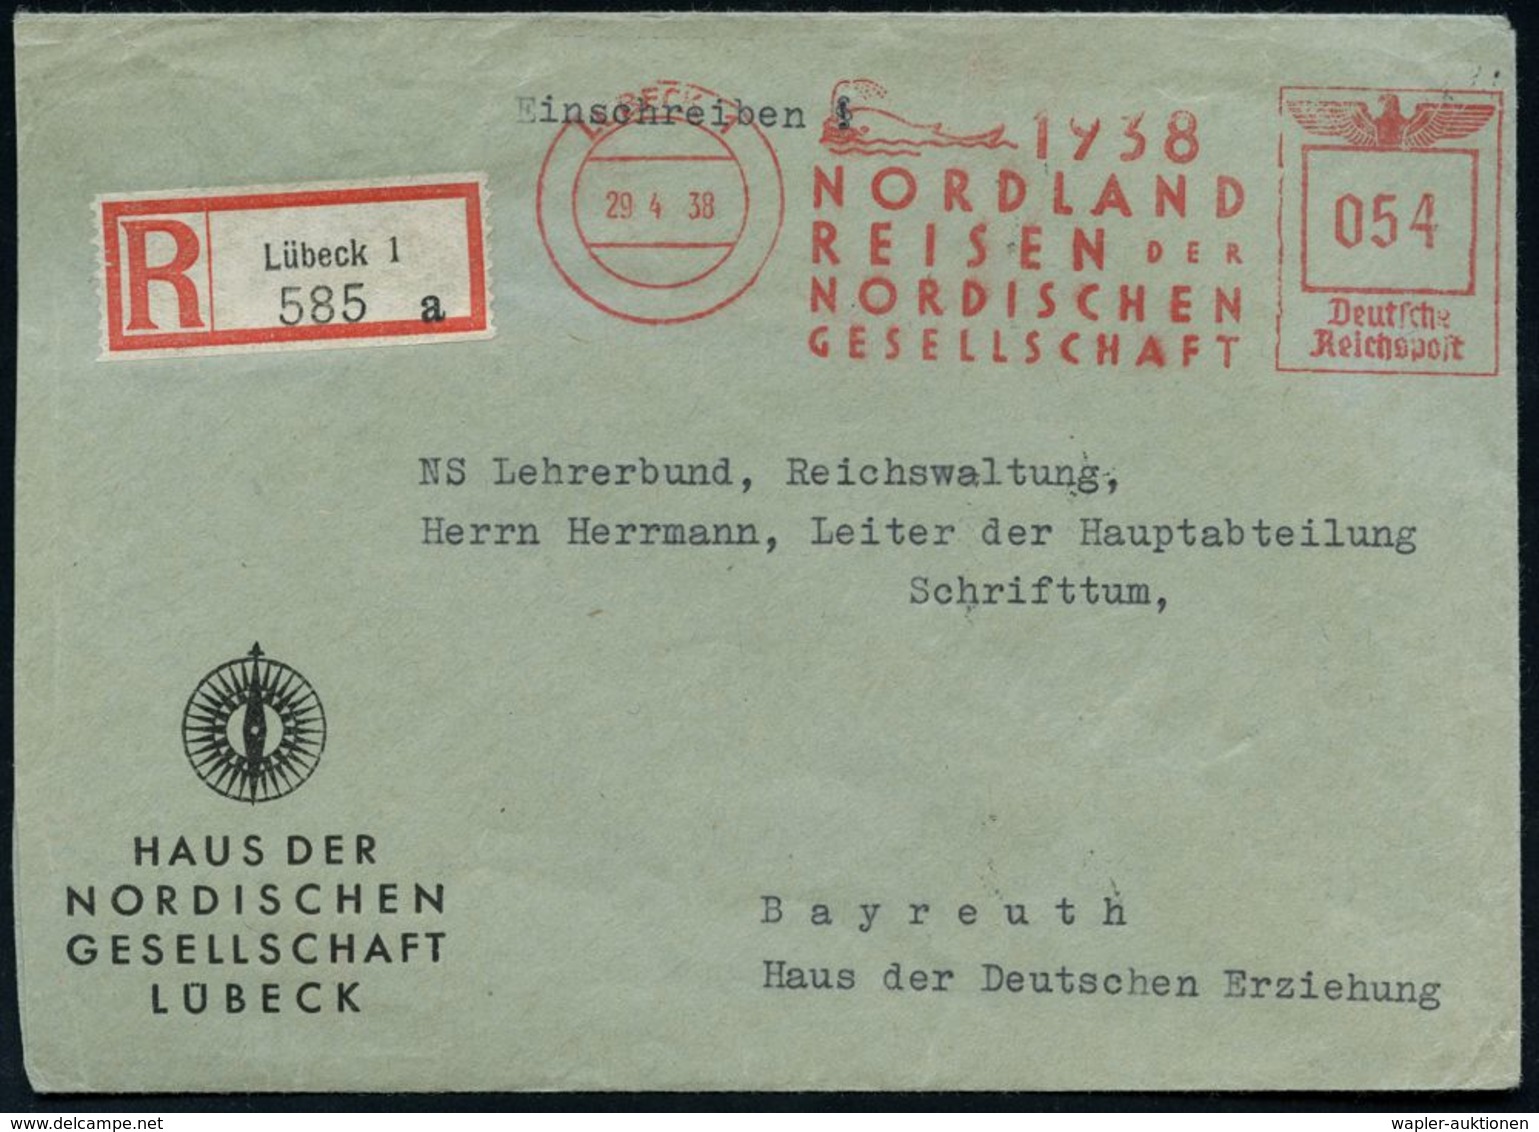 LÜBECK 1/ 1937/ NORDLAND/ REISEN DER/ NORDISCHEN/ GESELLSCHAFT 1938 (29.4.) Sehr Seltener AFS 054 Pf. = Wal (bläst Wasse - Spedizioni Artiche